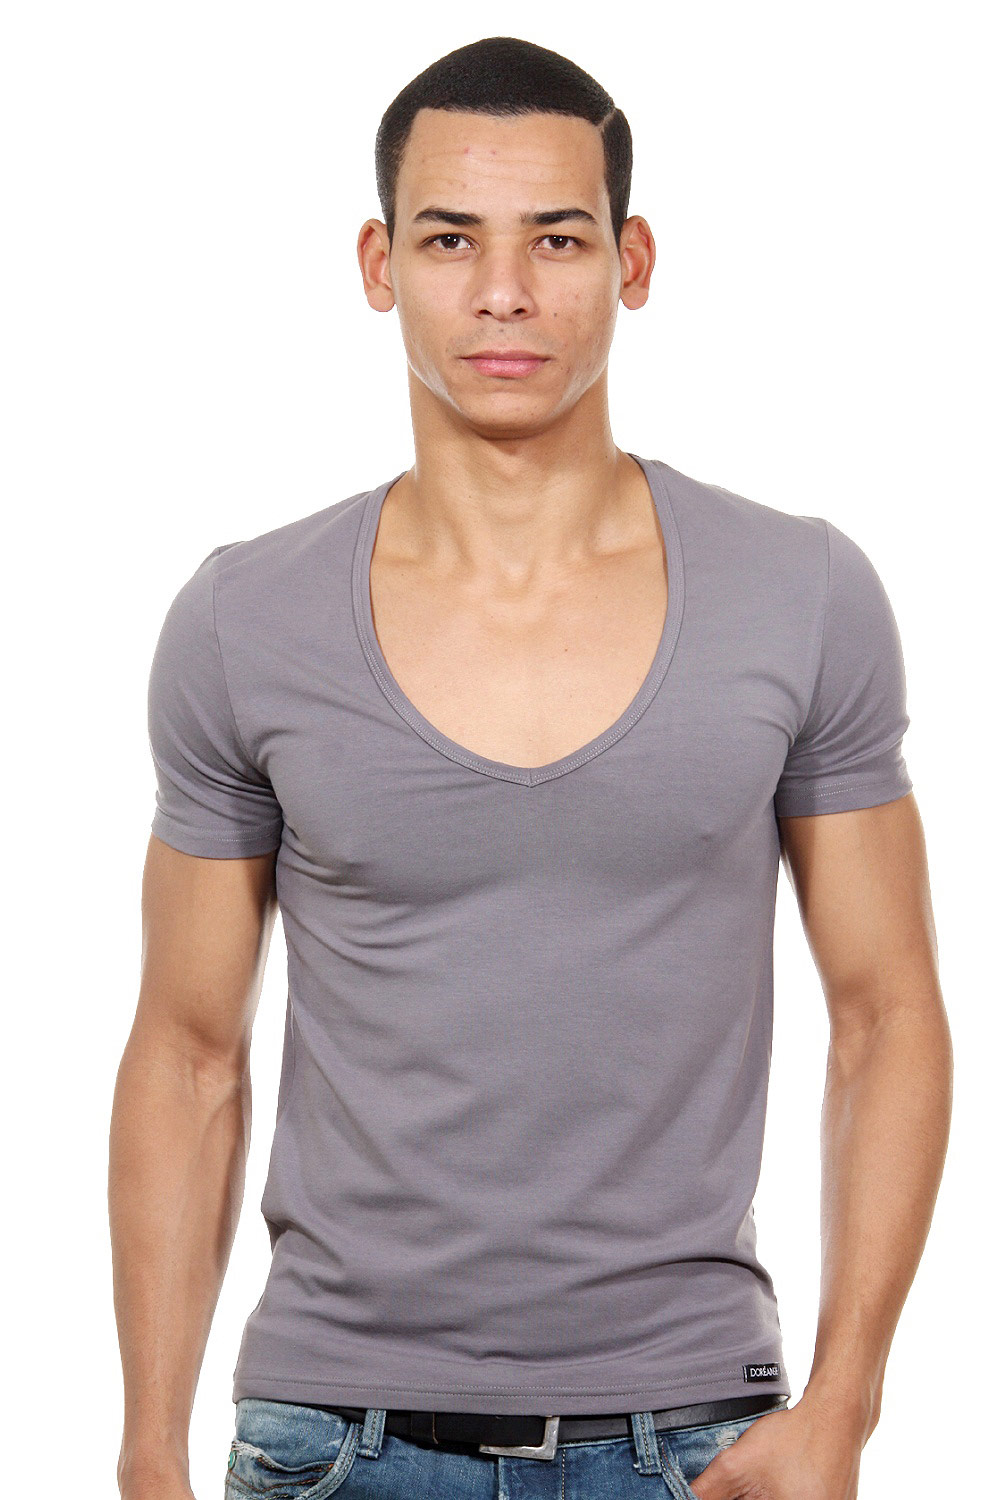 DOREANSE t-shirt r-neck at oboy.com